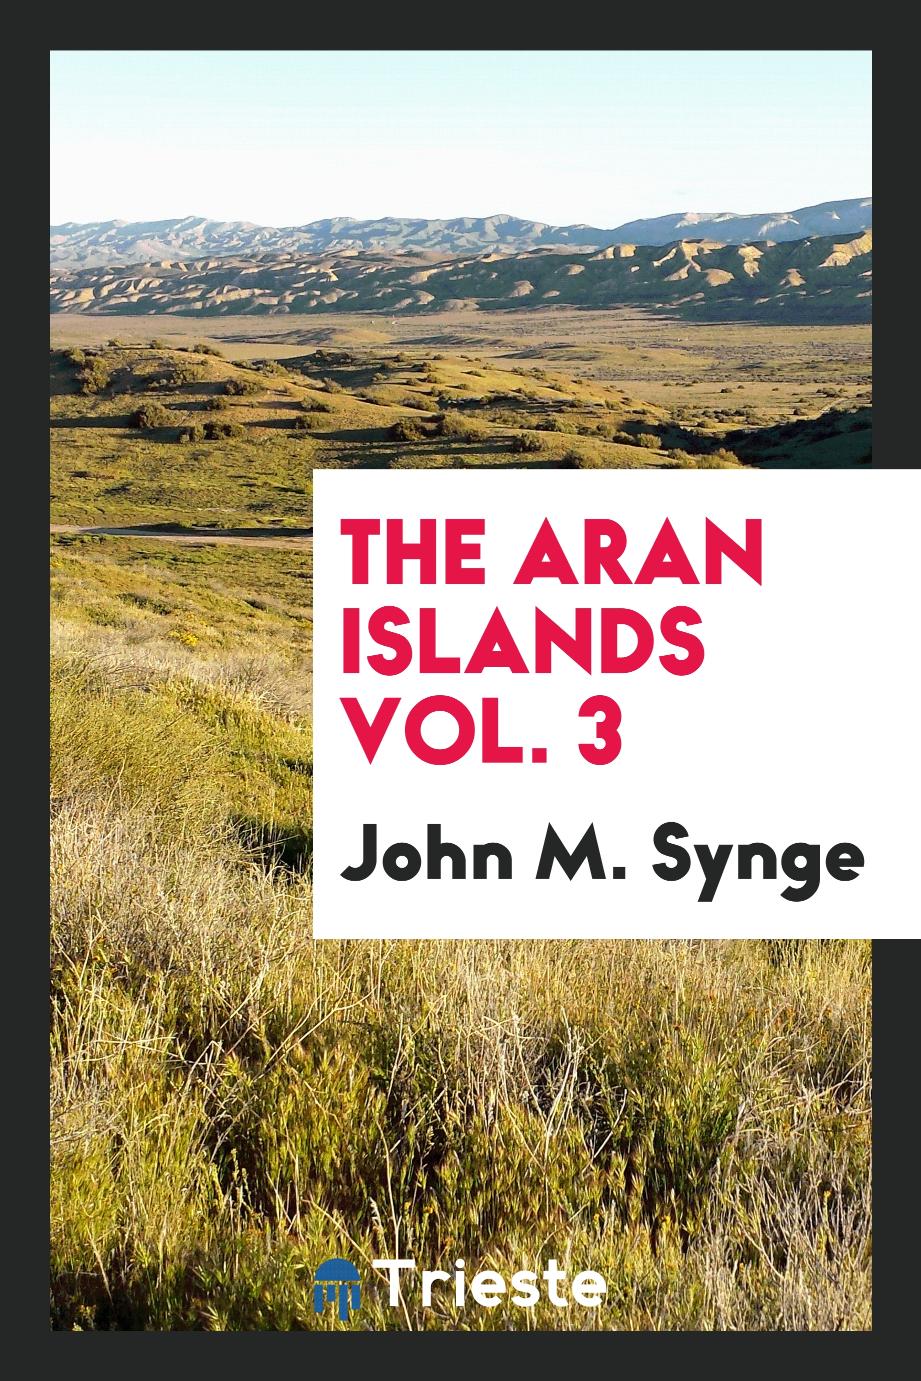 The Aran islands Vol. 3